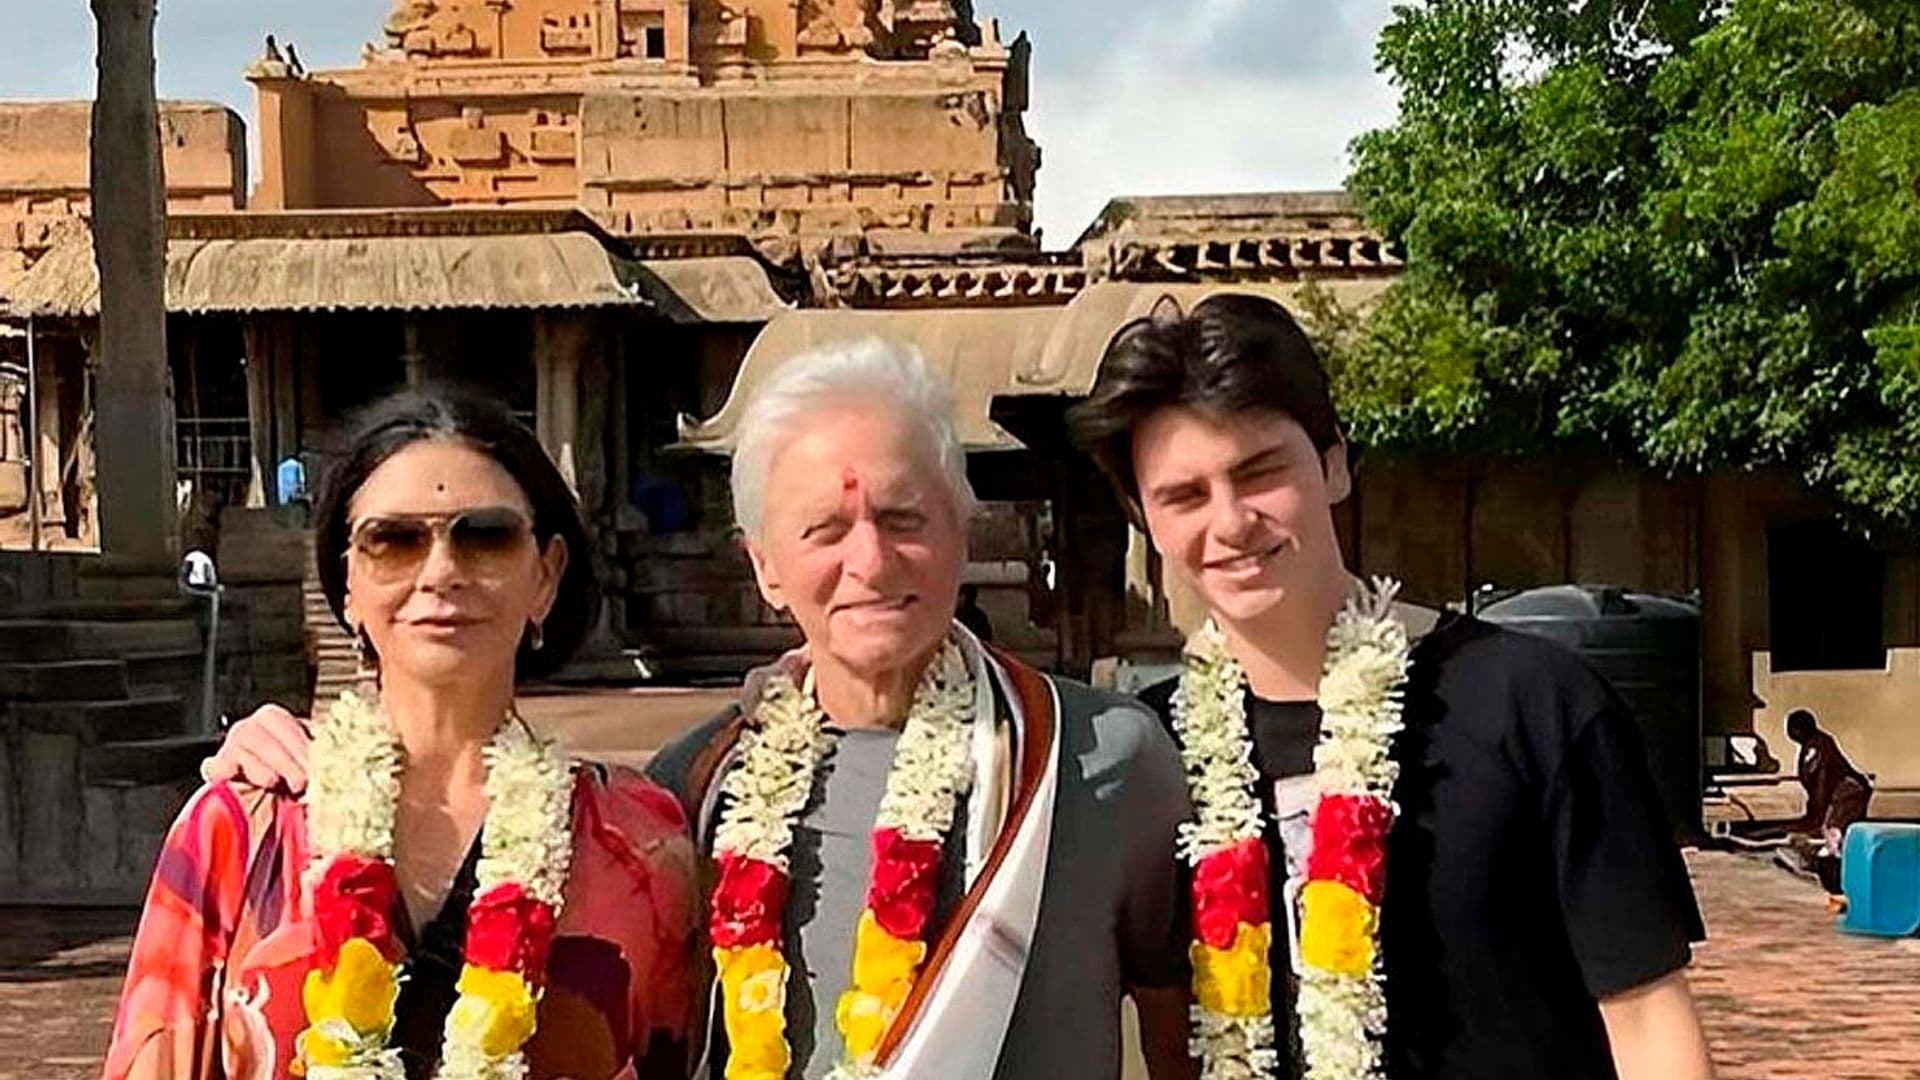 Las imágenes del apasionante viaje de Michael Douglas, Catherine Zeta-Jones y su hijo a la India